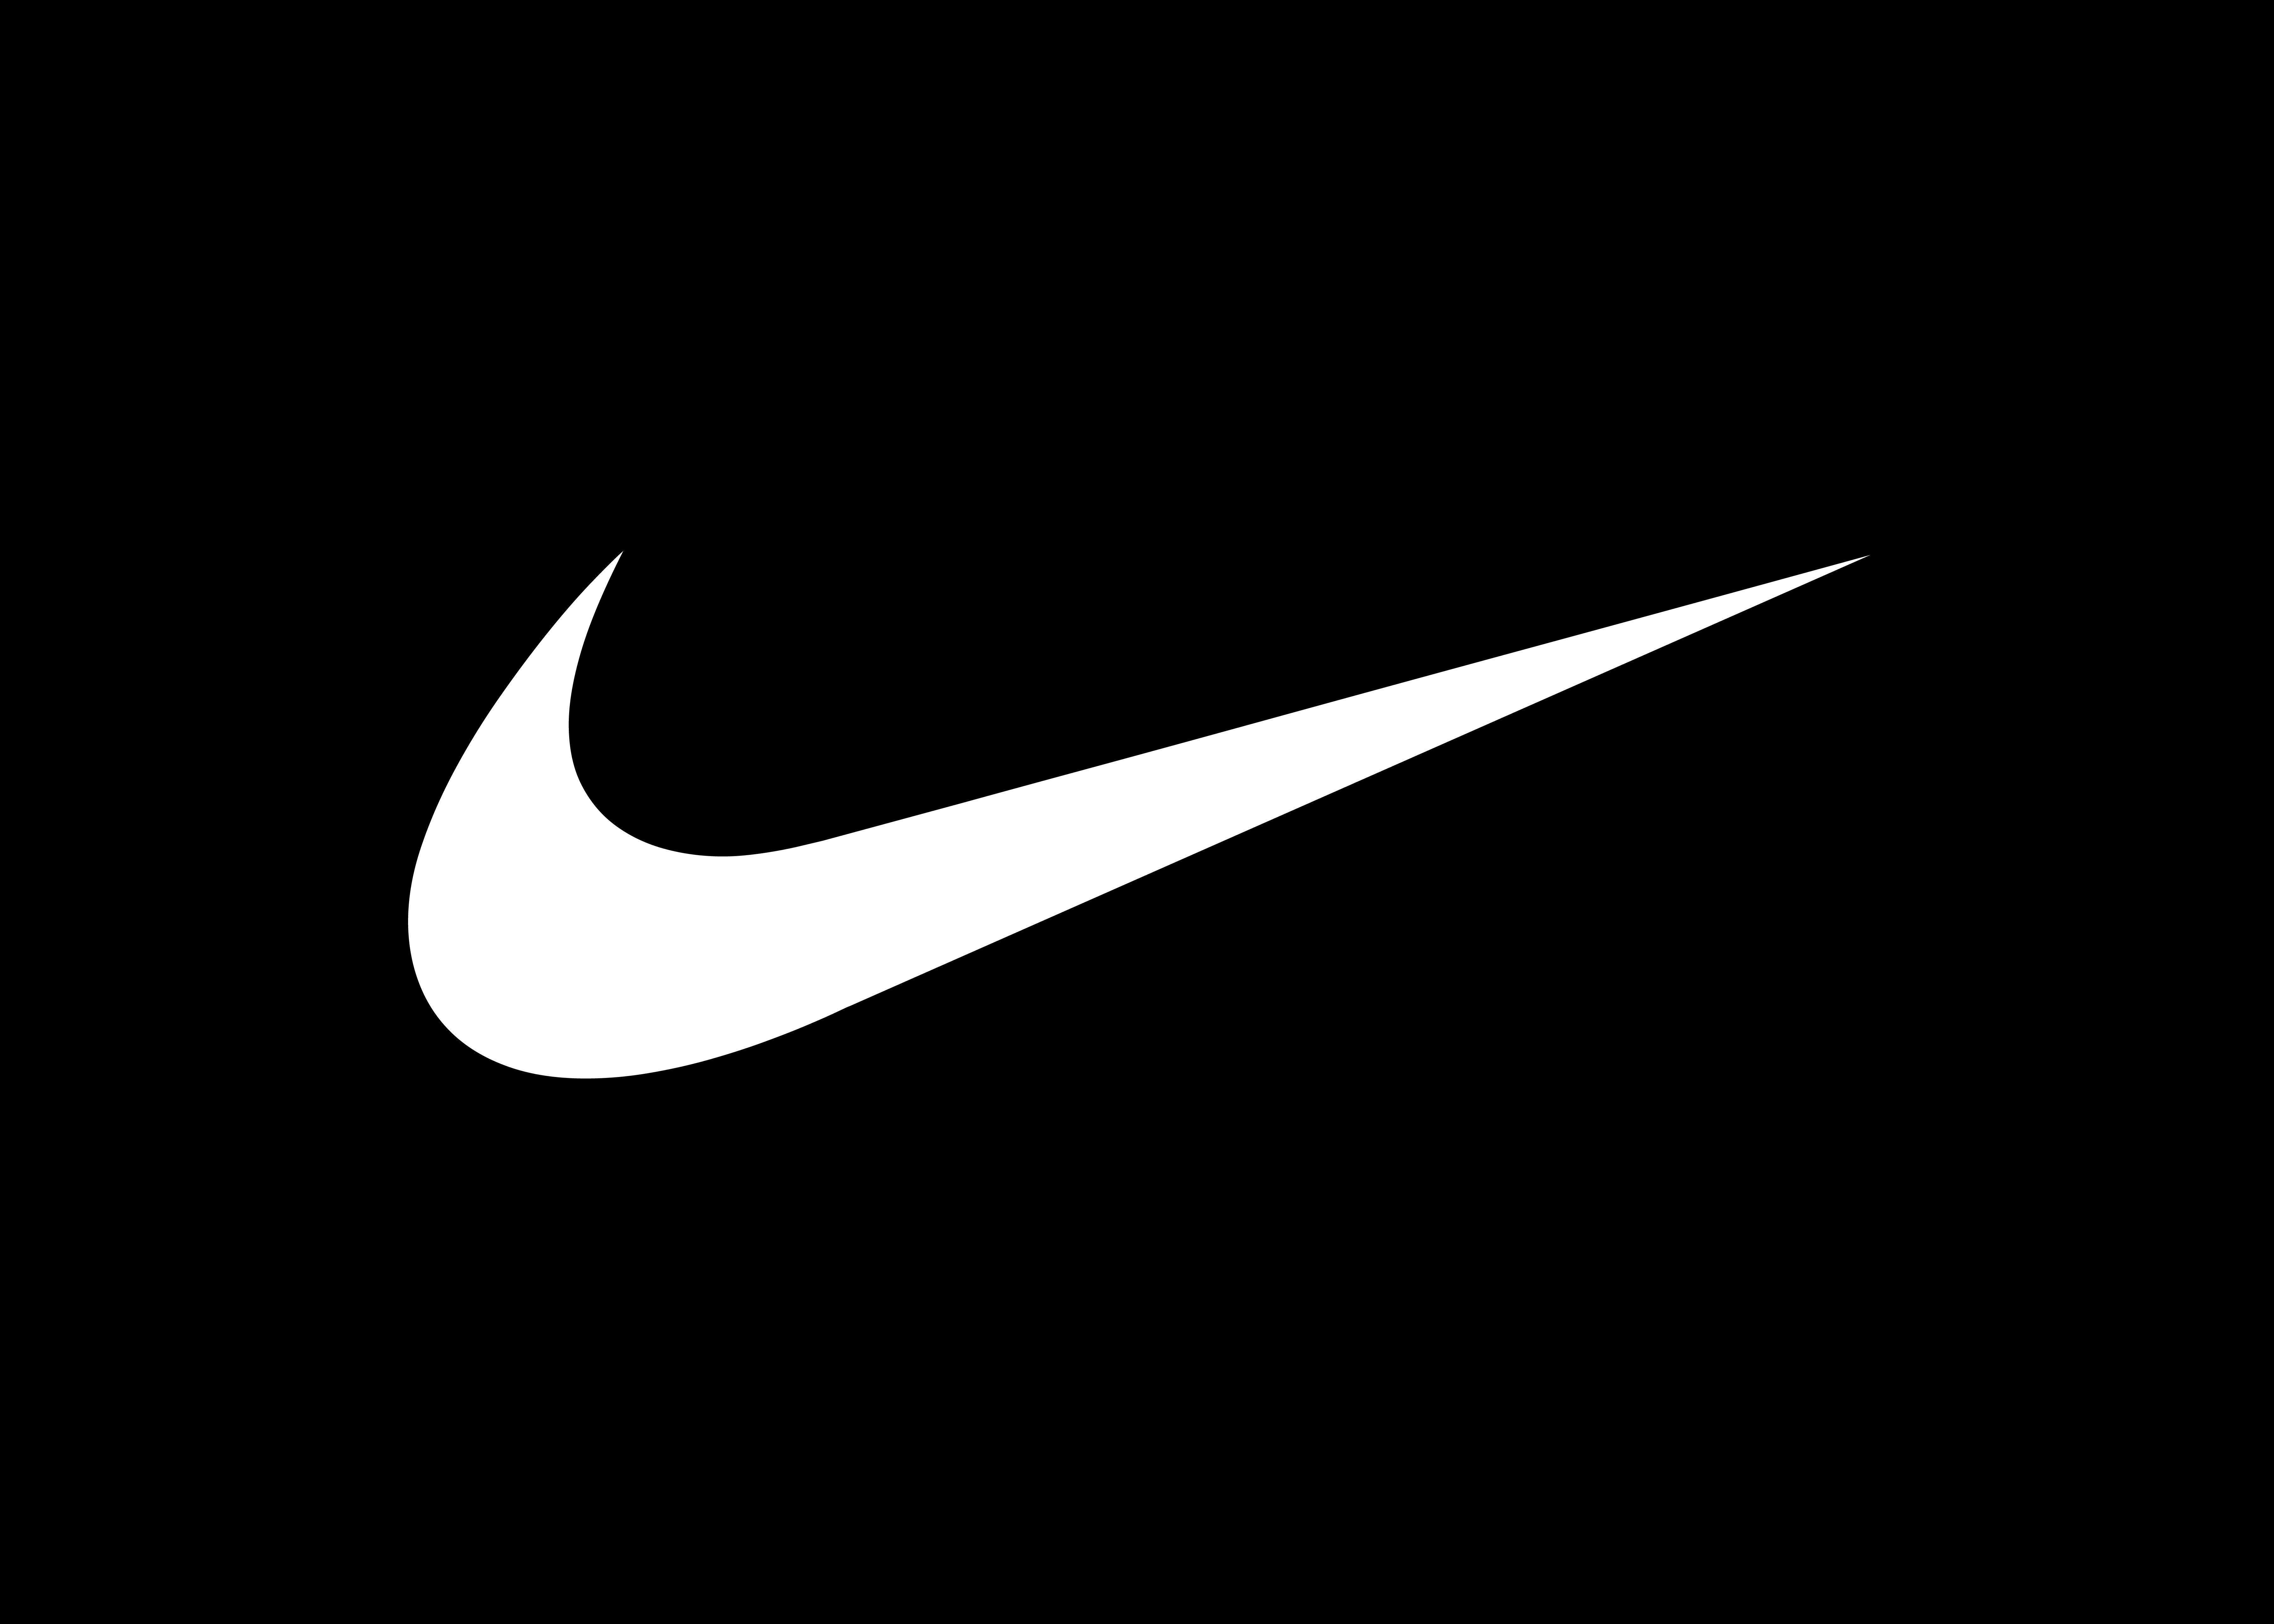 Download 640 Background Hitam Nike Paling Keren